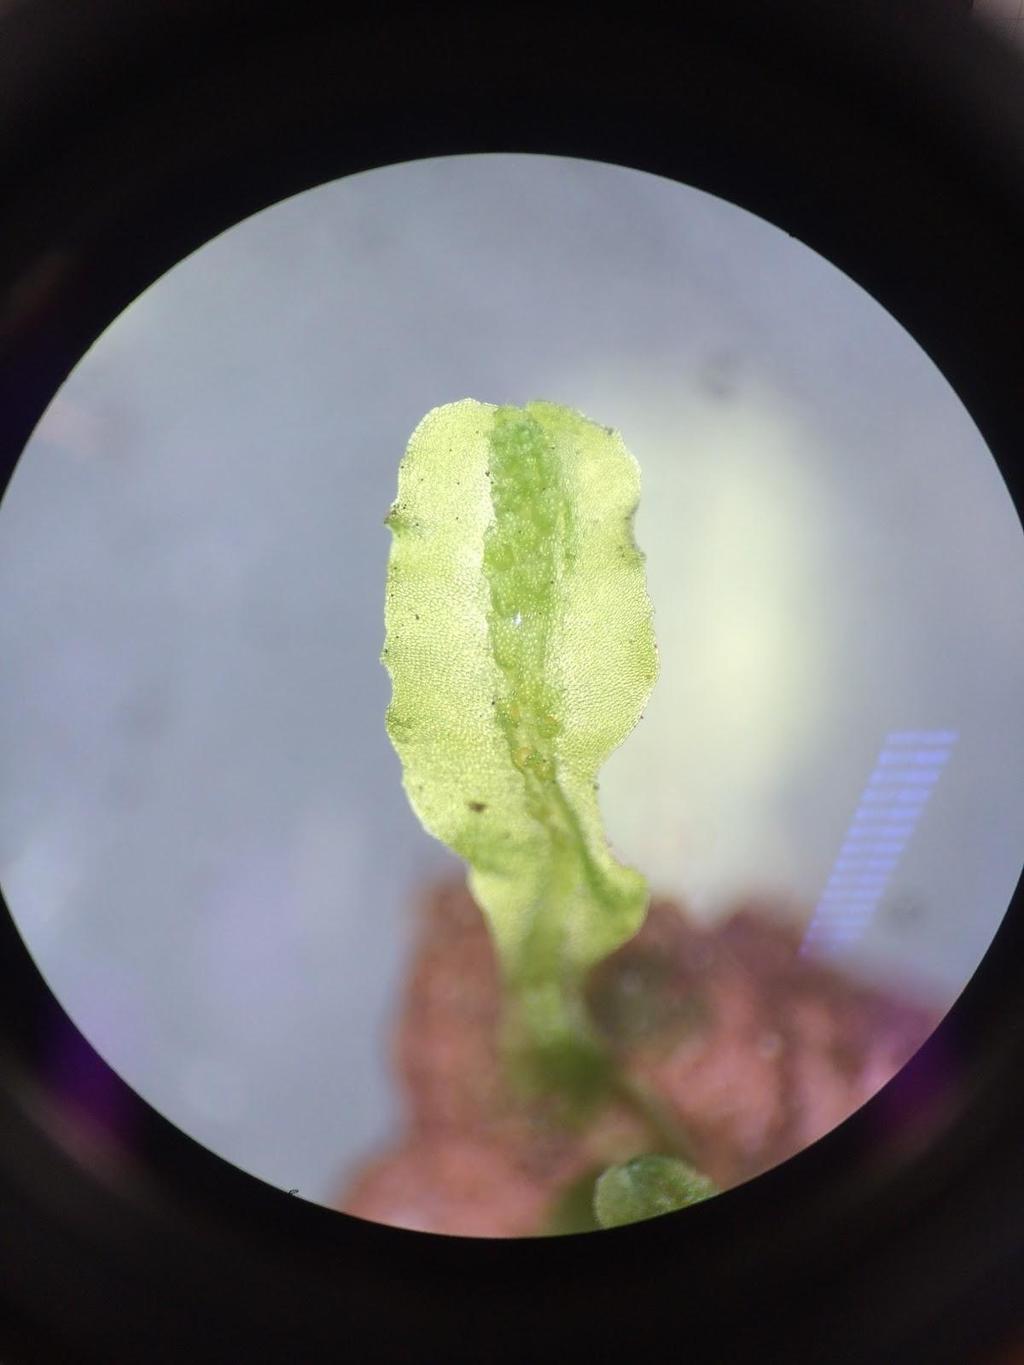 Nota-se no gametófito taloso de hepática, sua coloração verde e simetria dorsiventral.